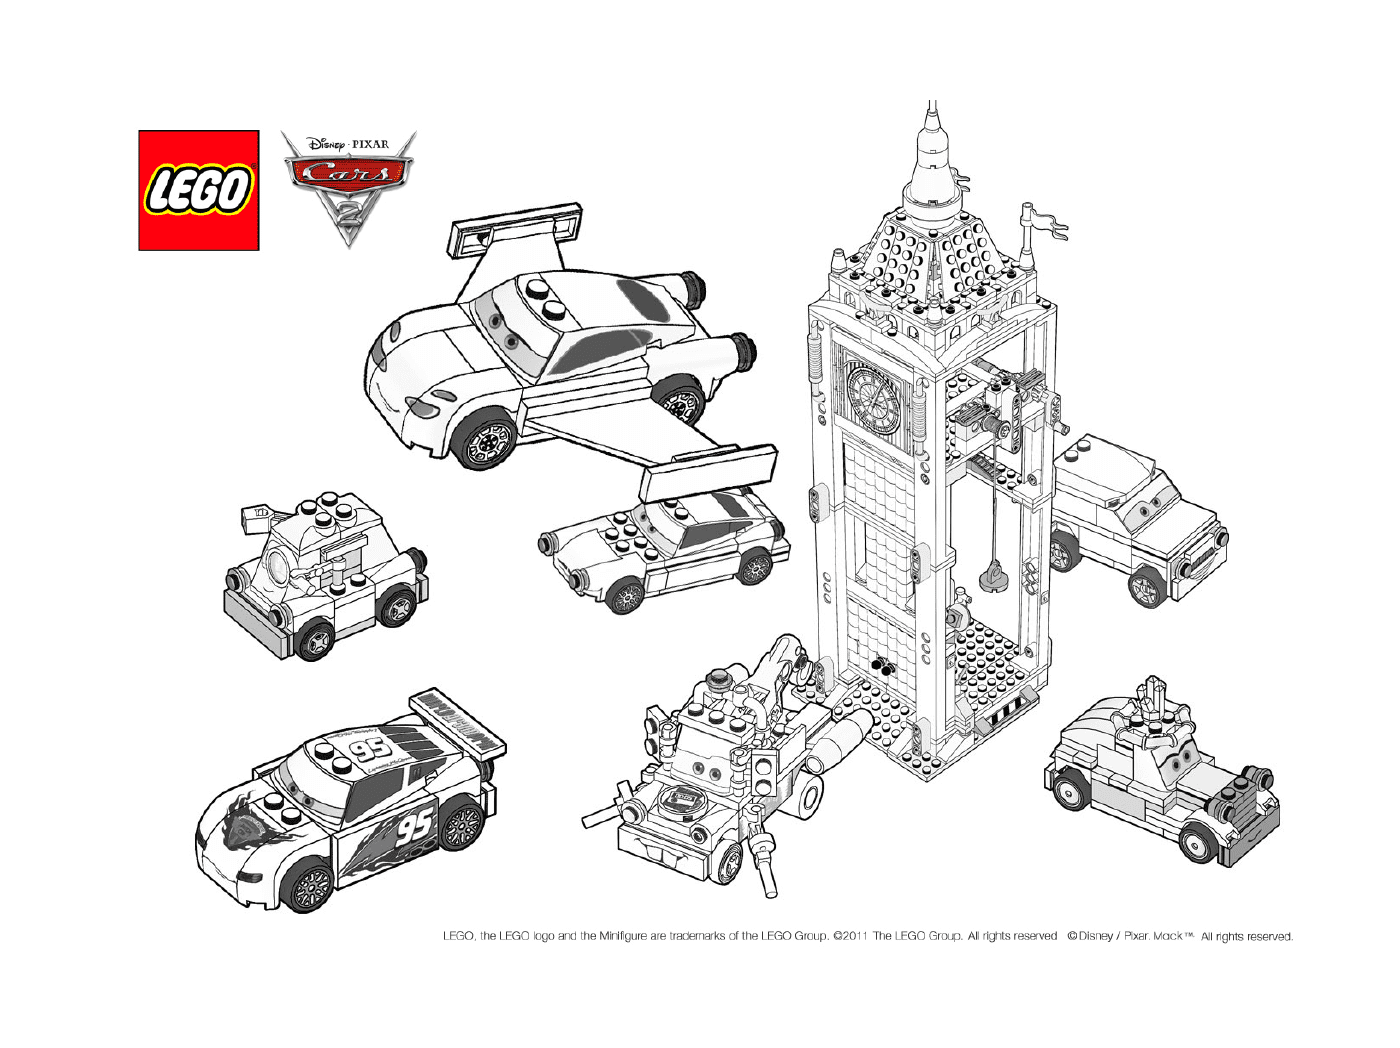   Lego Cars 3, le film 